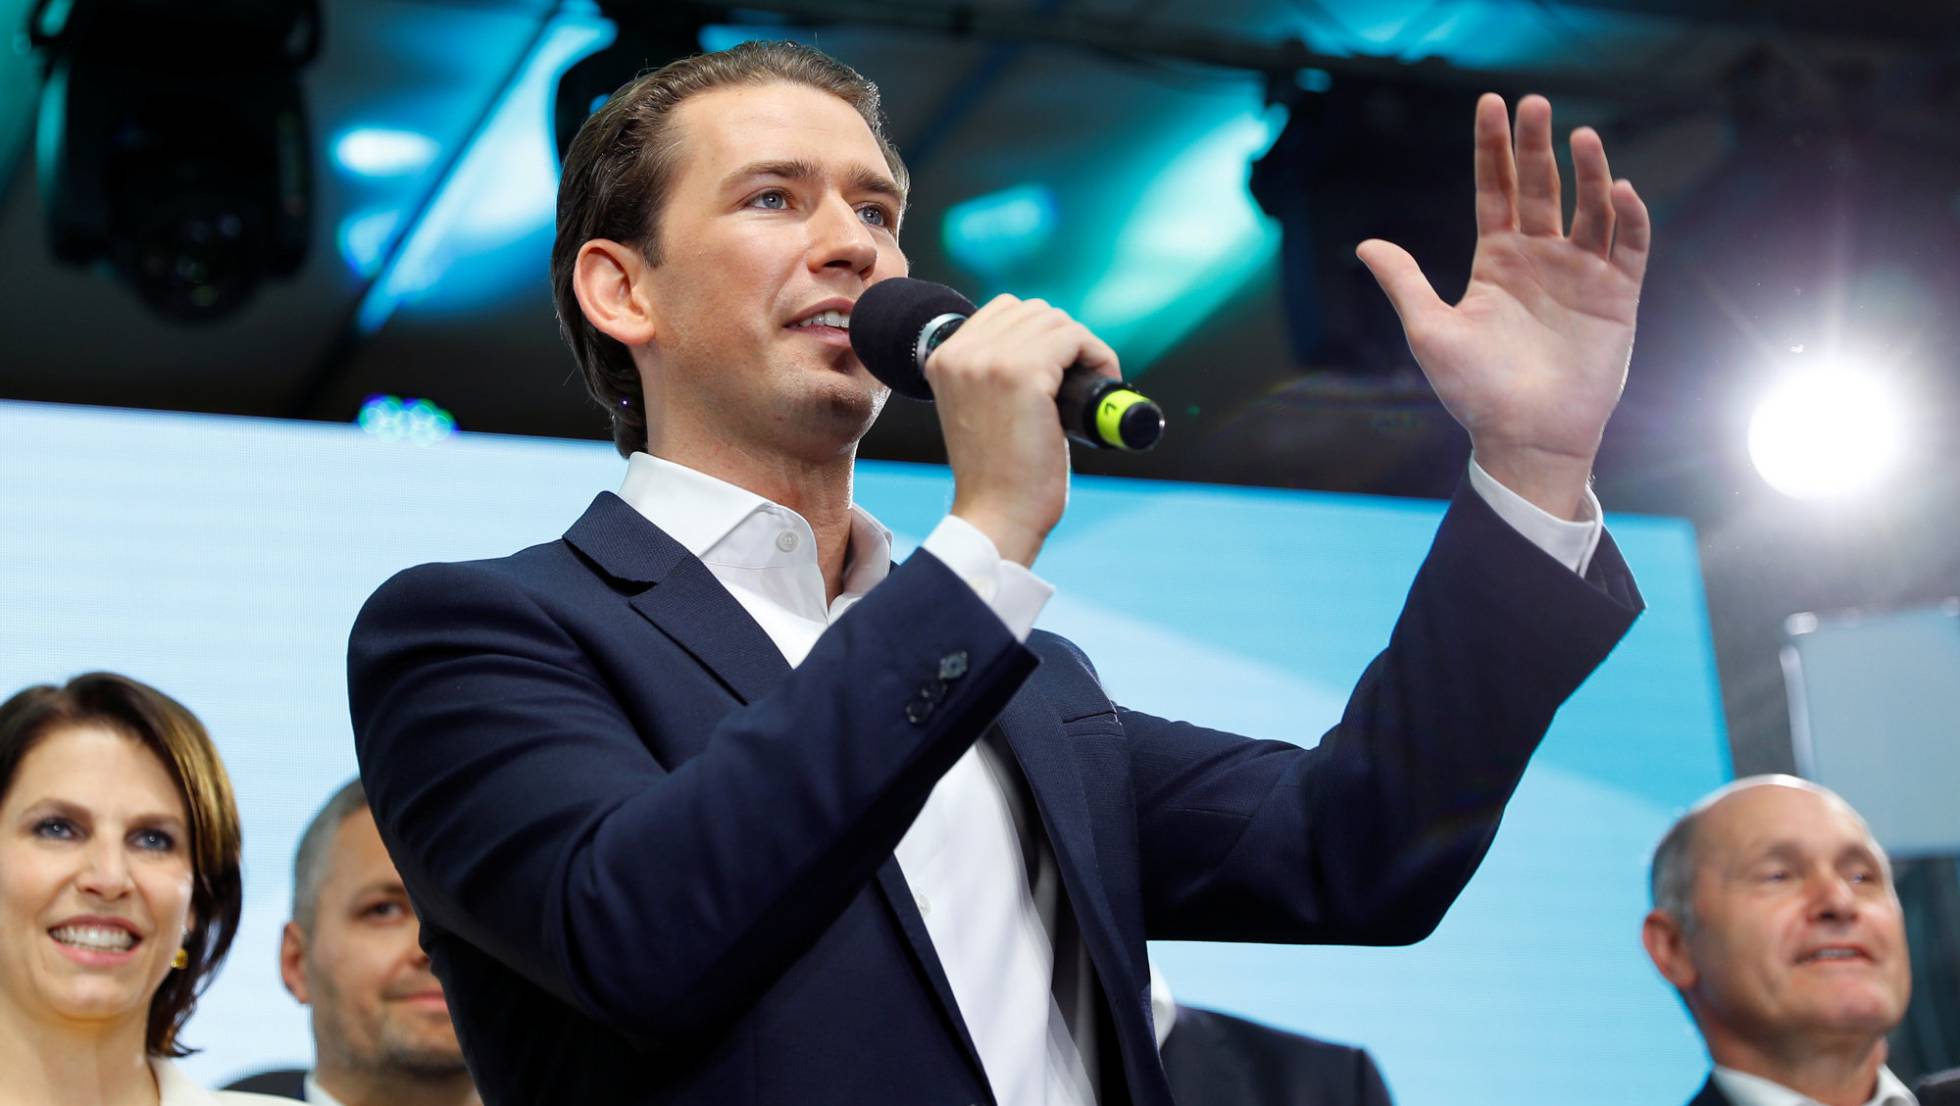 Los ultras y los socialdemócratas apoyarán la moción para destituir al canciller de Austria